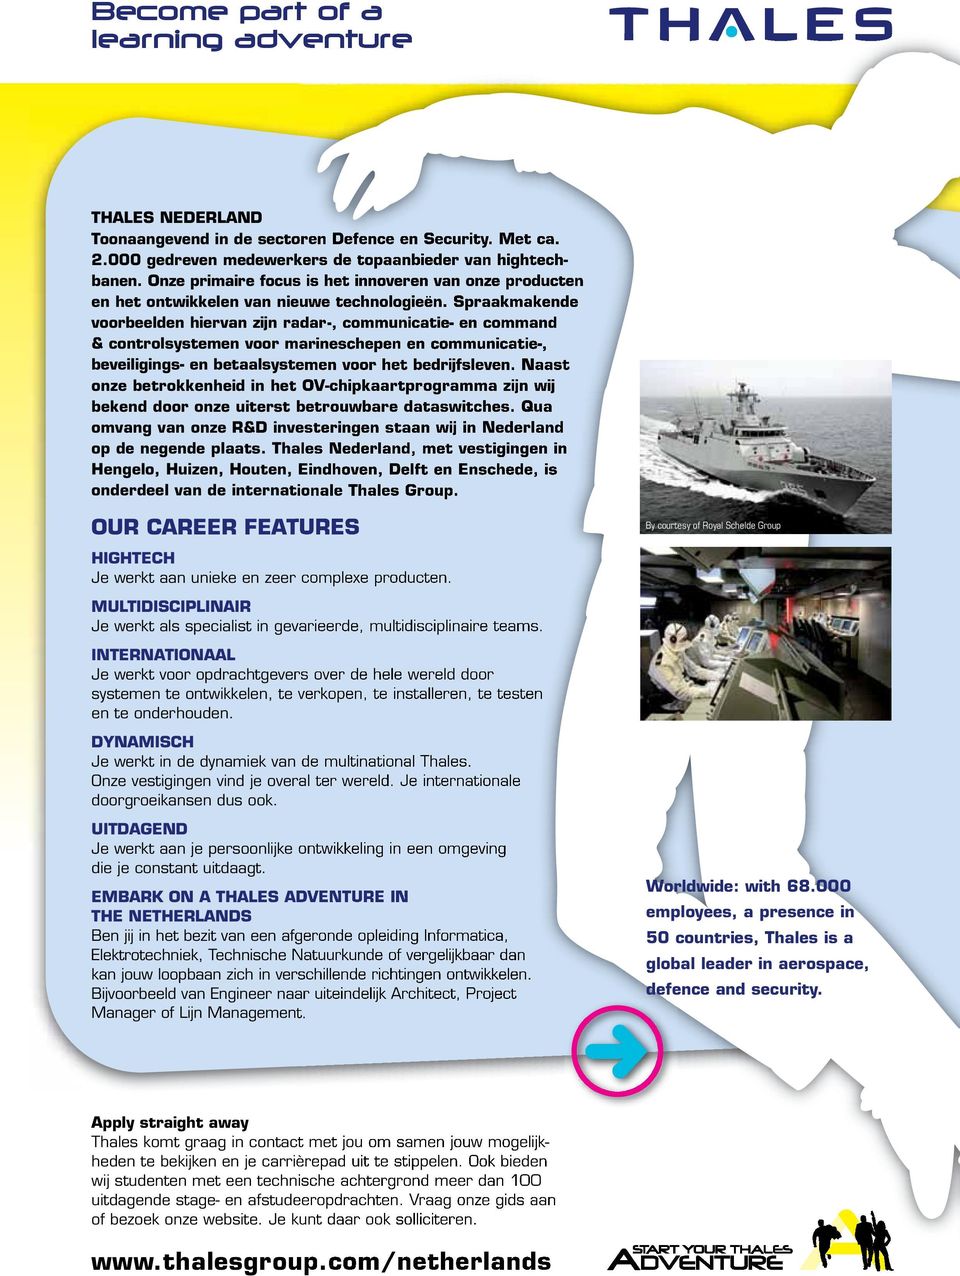 Spraakmakende voorbeelden hiervan zijn radar-, communicatie- en command & controlsystemen voor marineschepen en communicatie-, beveiligings- en betaalsystemen voor het bedrijfsleven.